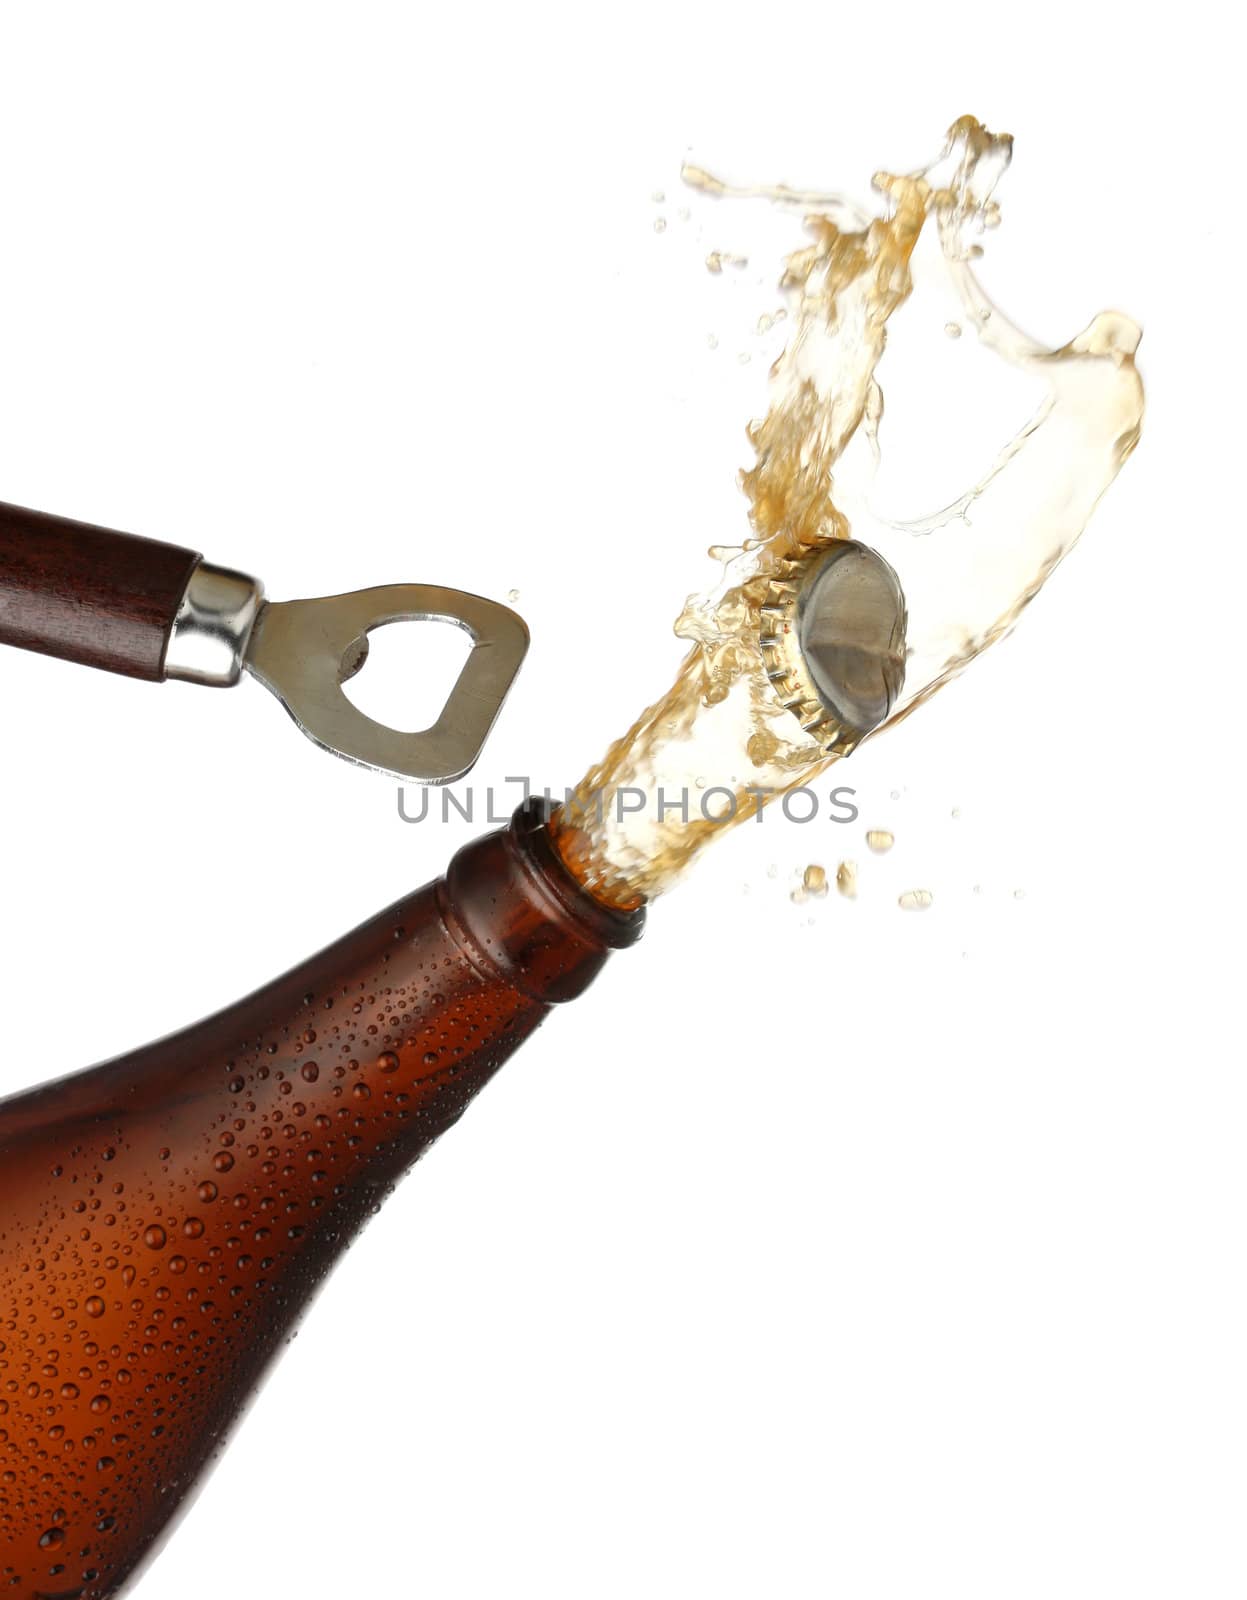 Opening a bottle of cold beer, splash image by Erdosain